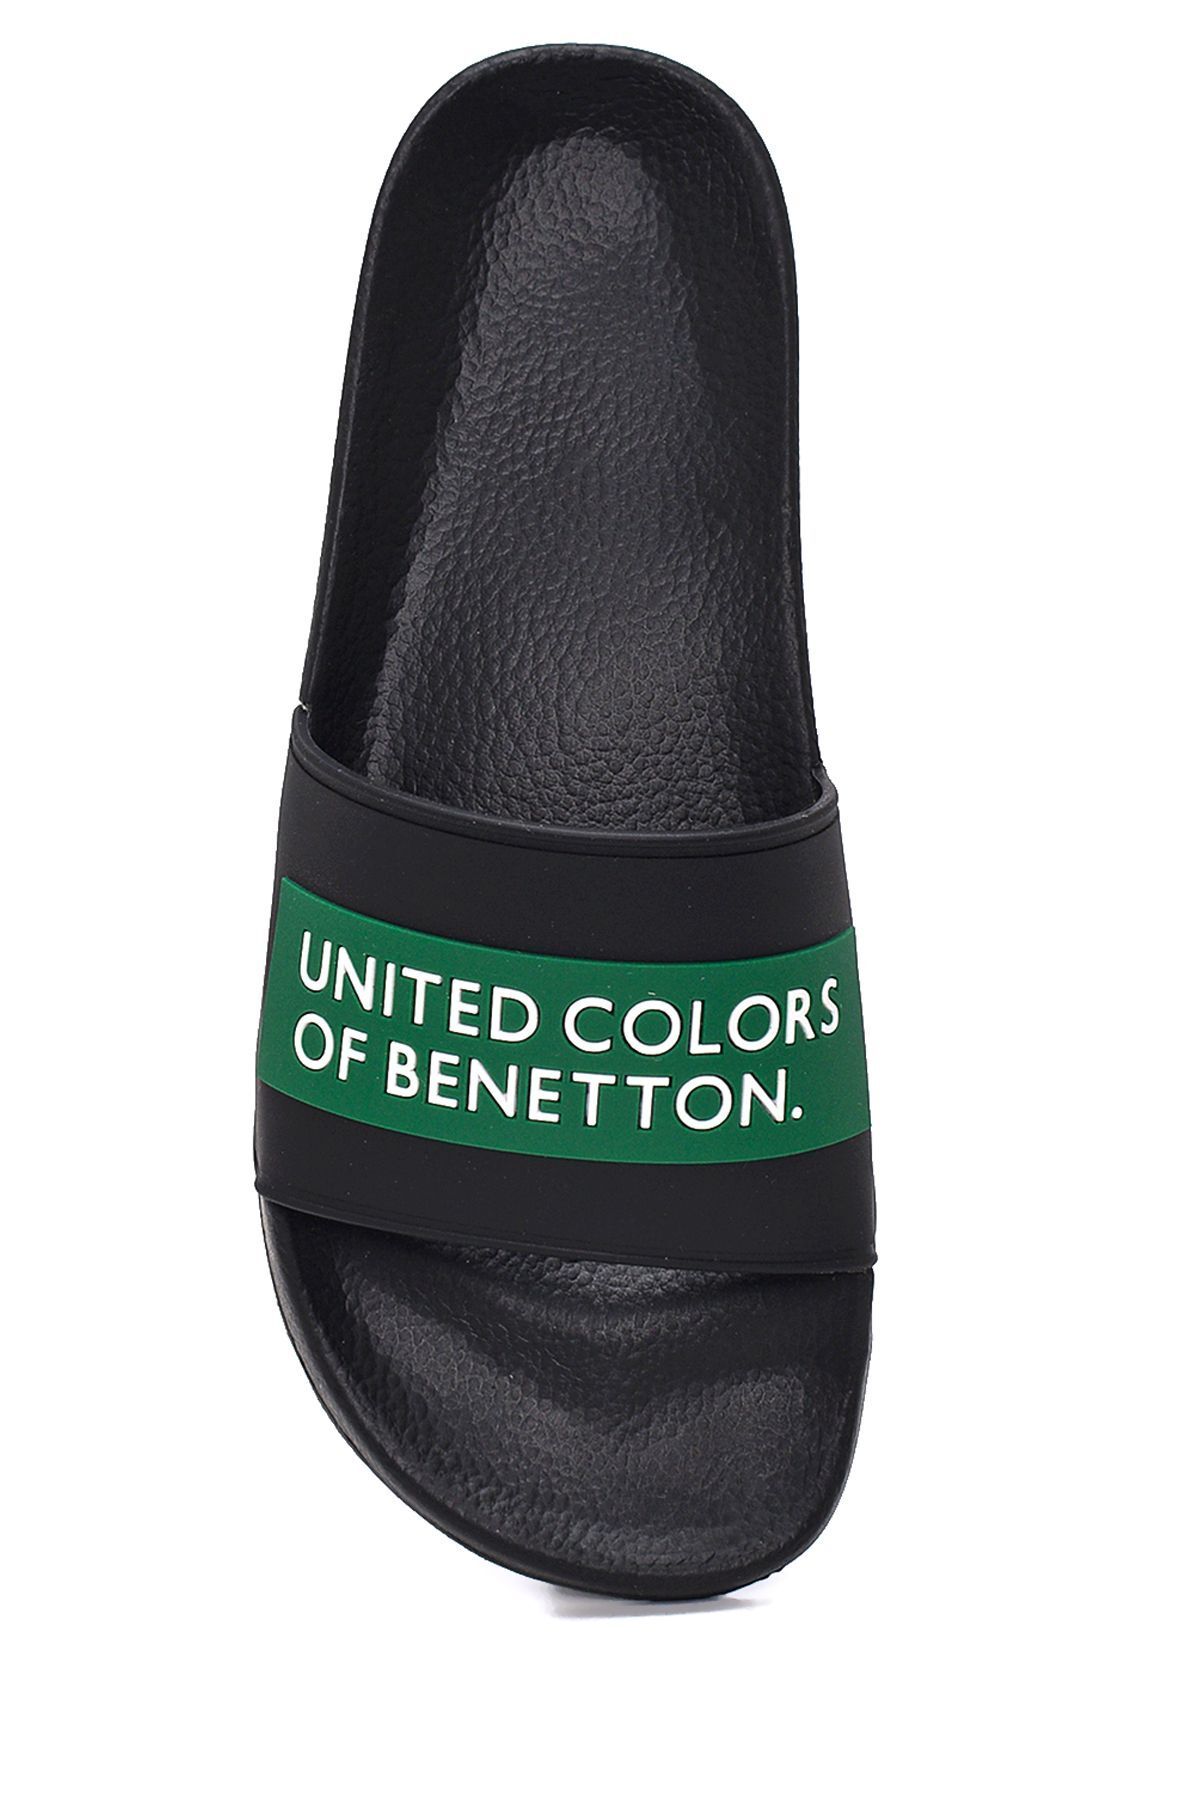 United Colors of Benetton Erkek Benetton Erkek Terlik BN-1261